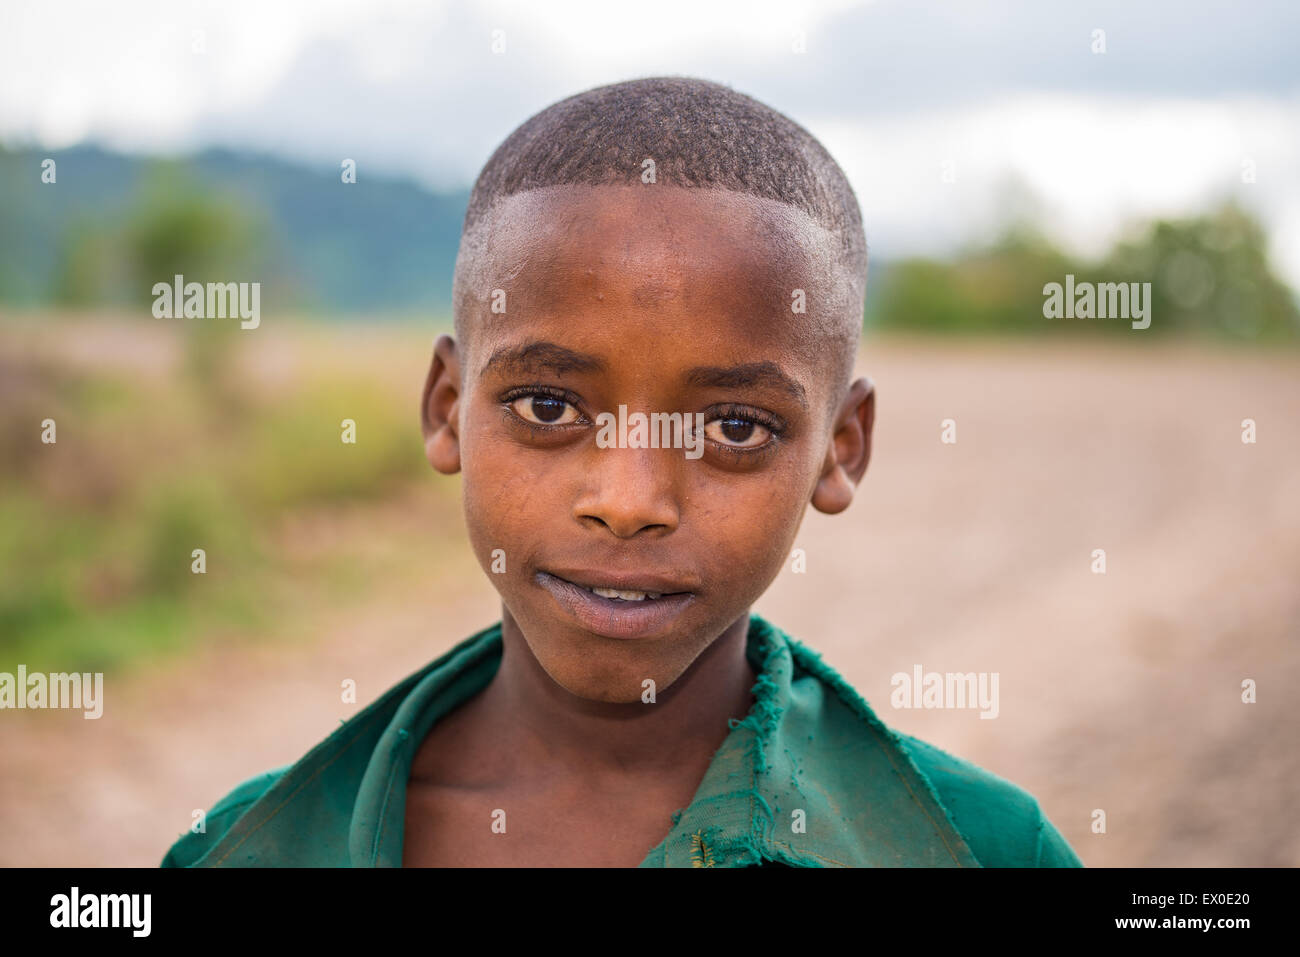 Young ethiopian boy Stock Photo